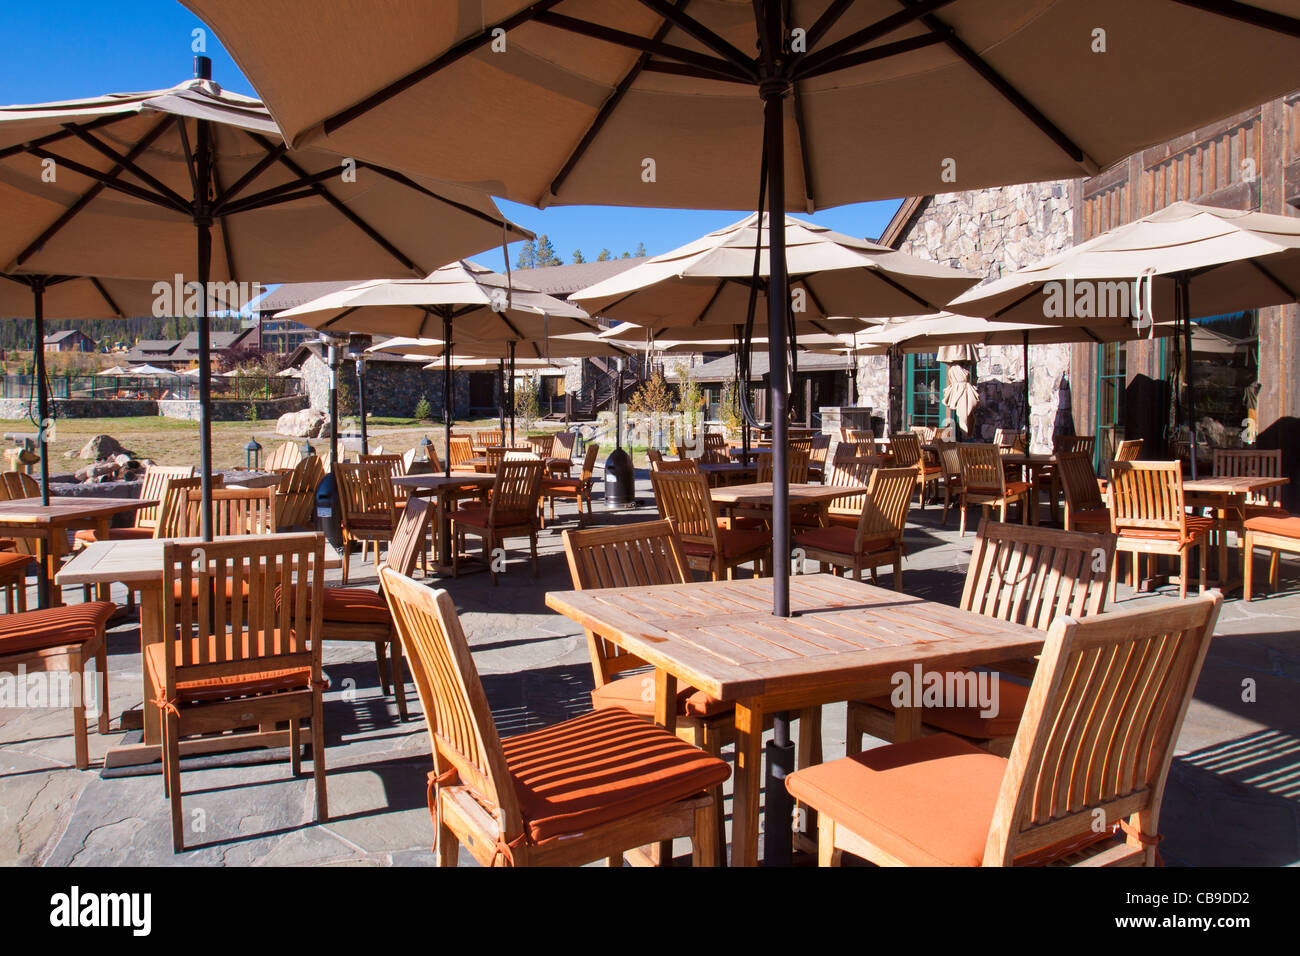 Patio esterno a pranzare in una località di montagna lodge con ombrelloni su tavoli e sedie di legno Foto Stock